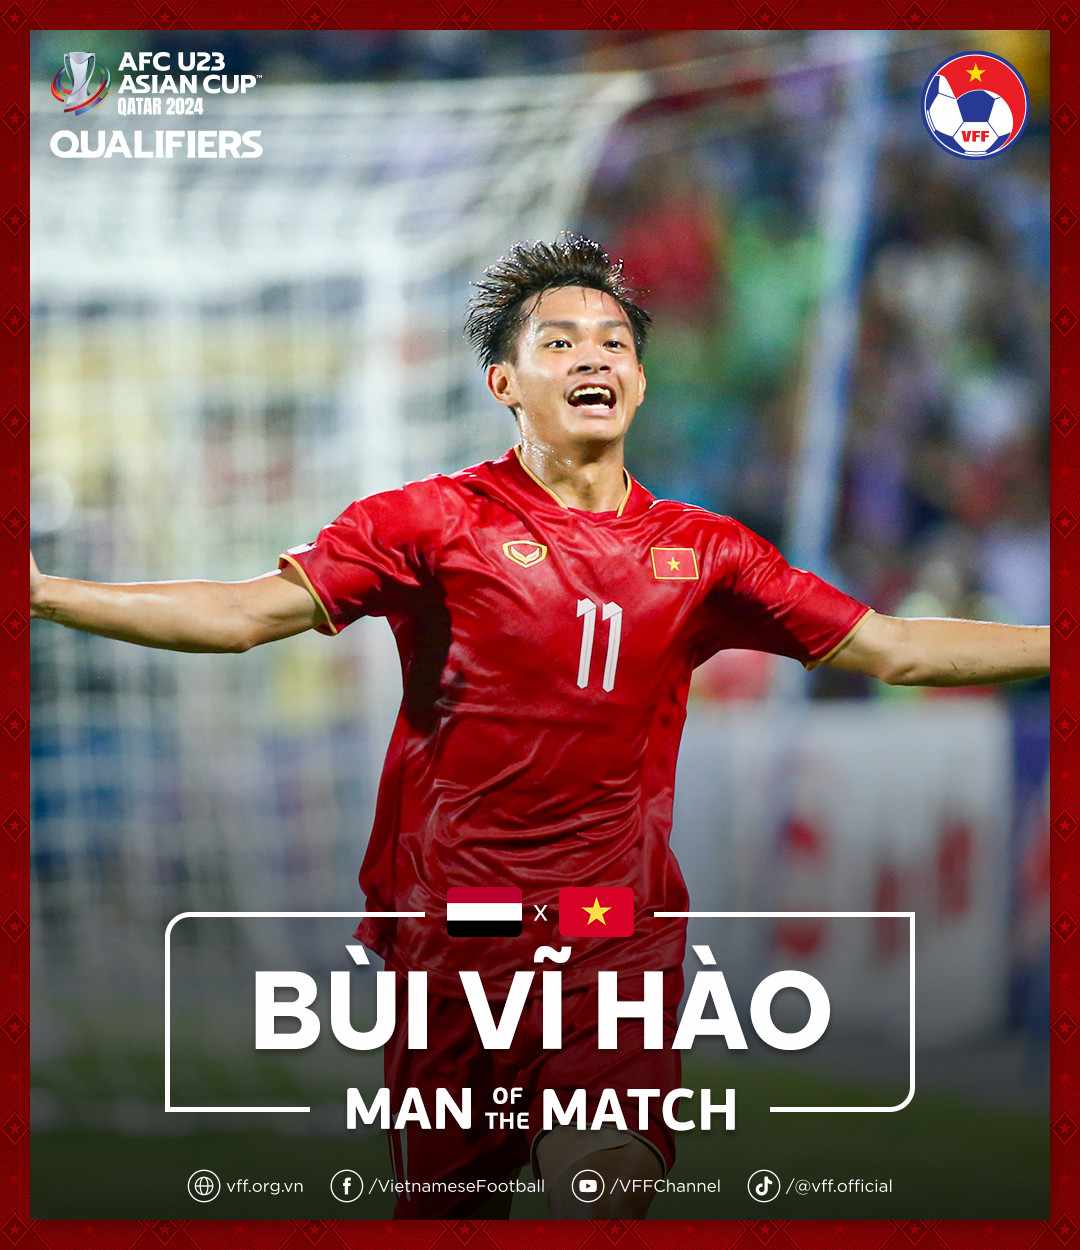 Tiền đạo Bùi Vĩ Hào là cầu thủ xuất sắc nhất trận đấu giữa U23 Việt Nam với U23 Yemen. Ảnh: VFF